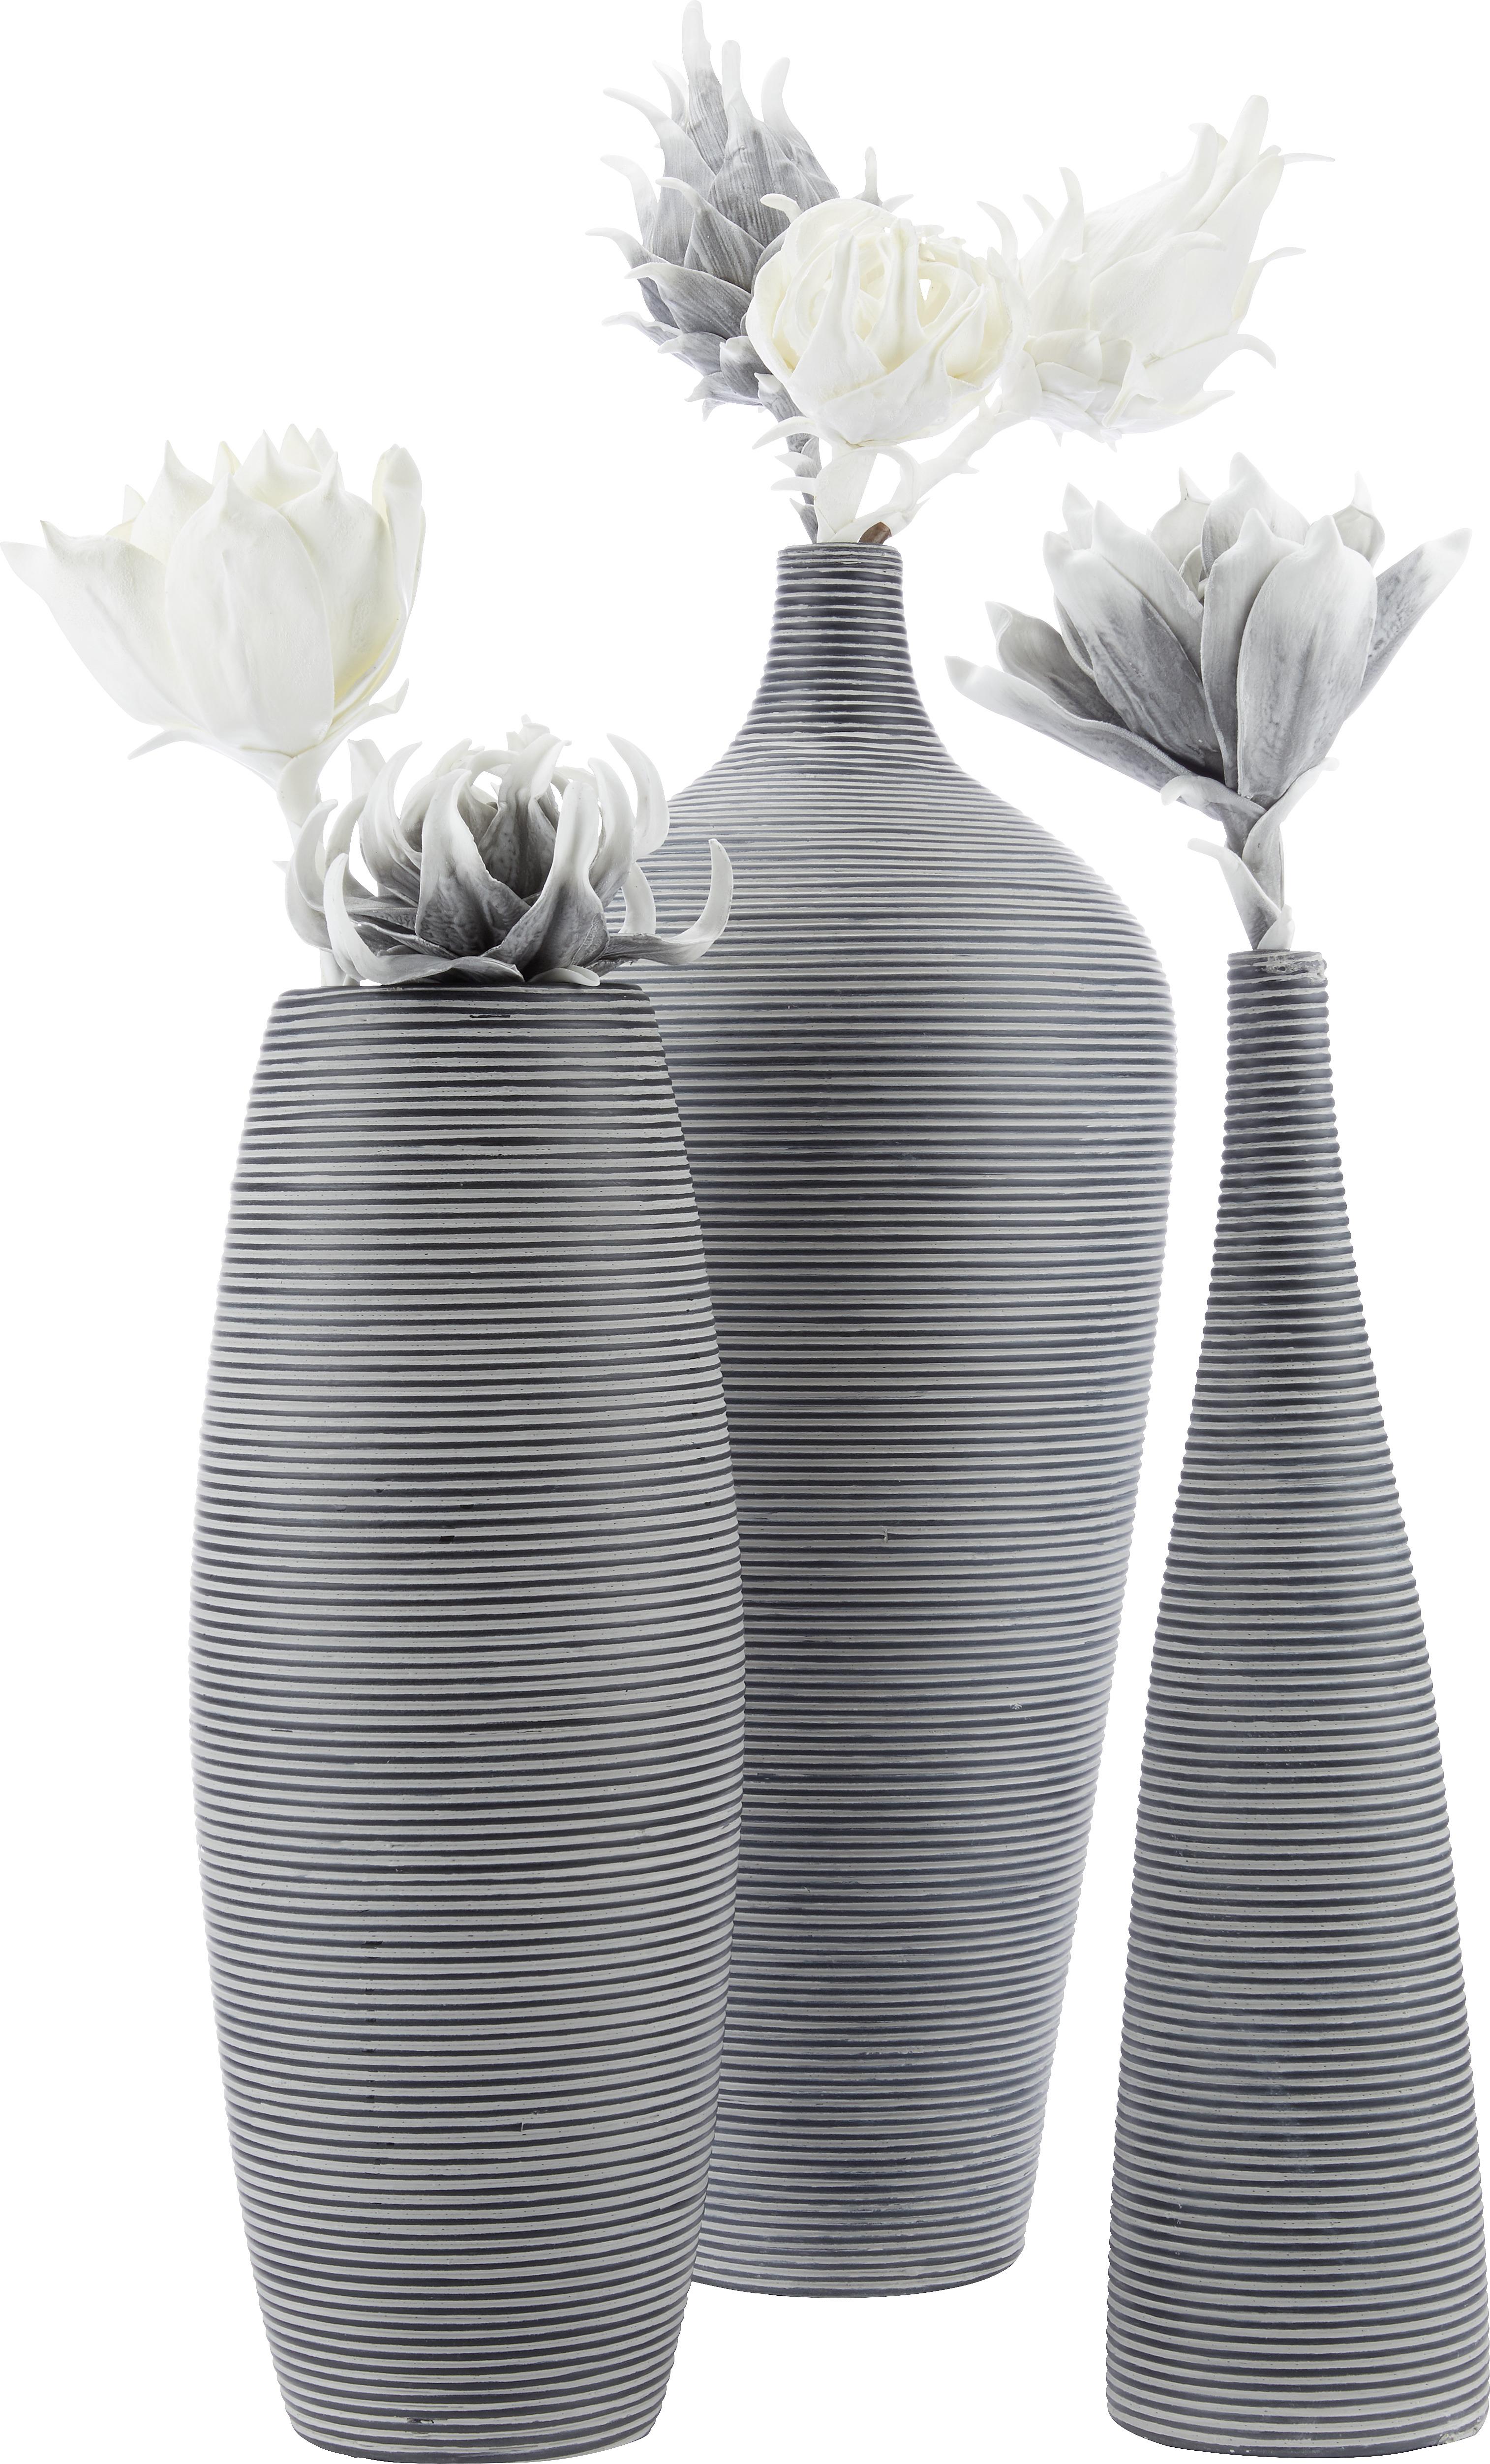 Váza Marlene - čierna, Štýlový, plast (22/59cm) - Modern Living